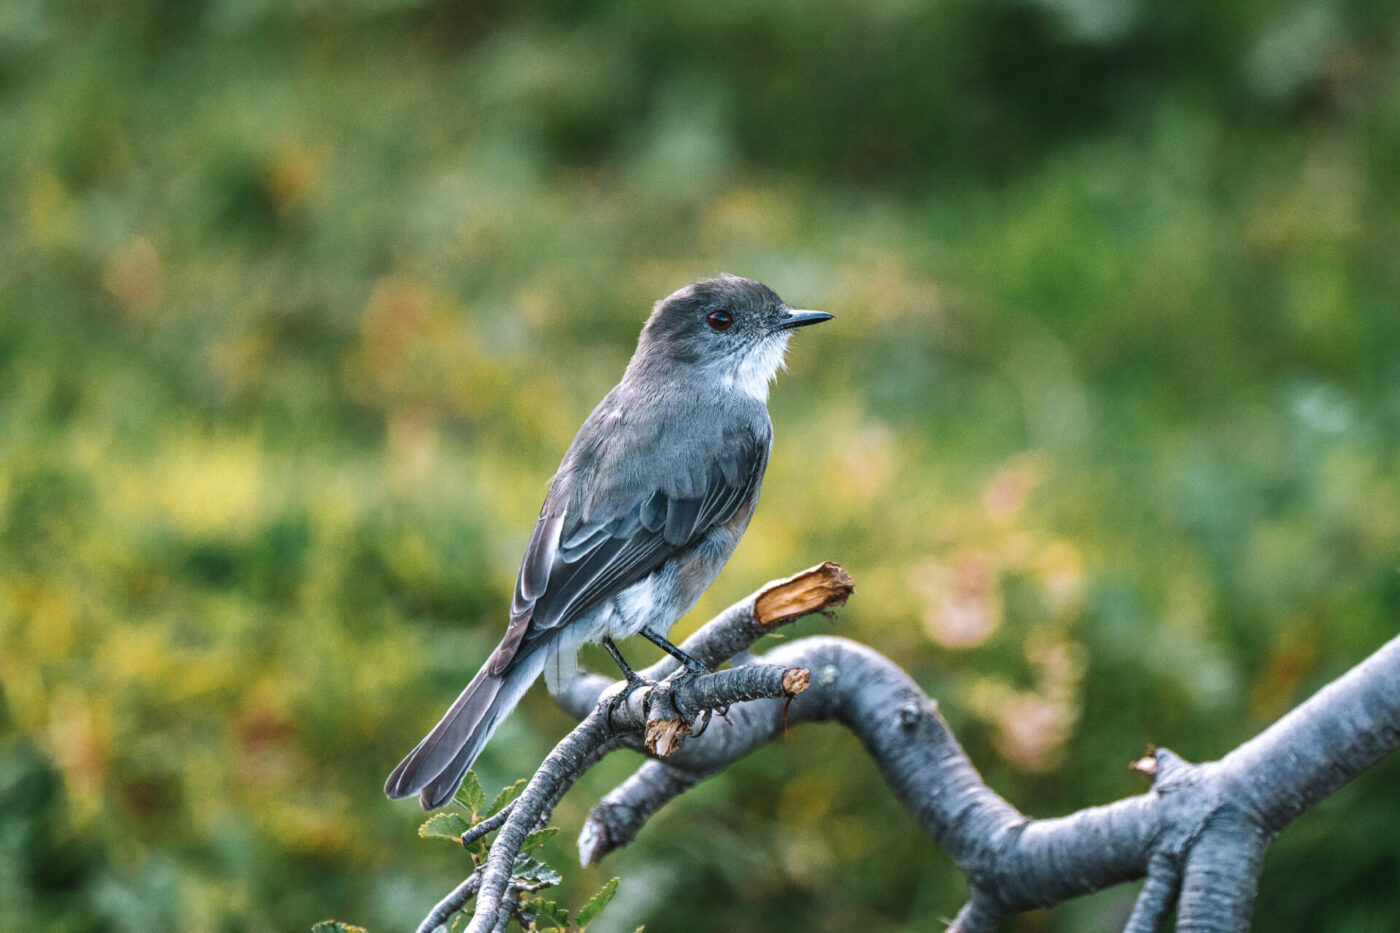 Bird species found in Tiera del Fuego National Park